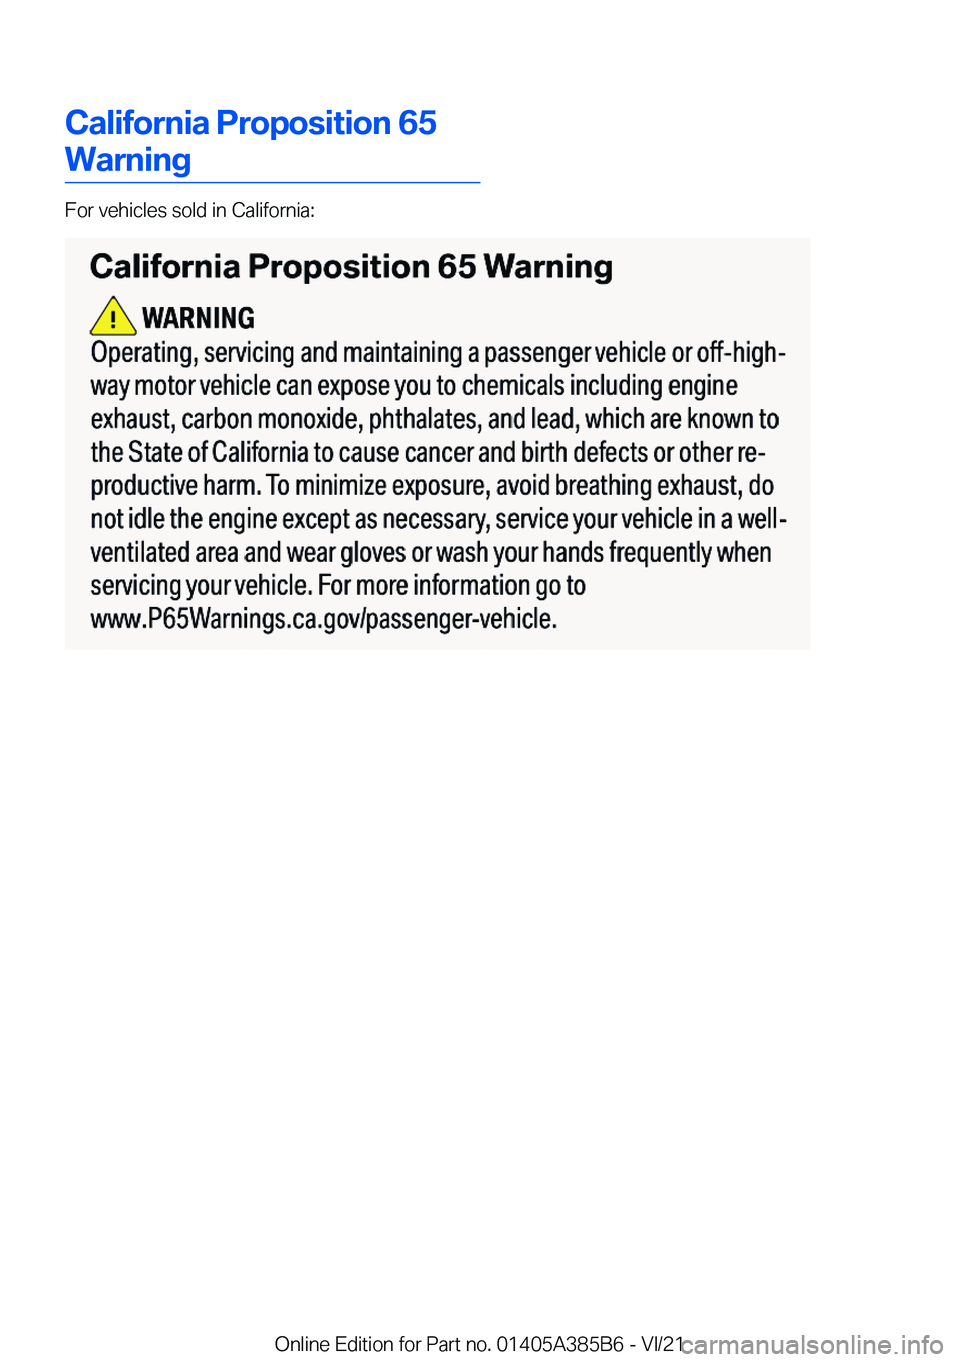 BMW X7 2022  Owners Manual �C�a�l�i�f�o�r�n�i�a��P�r�o�p�o�s�i�t�i�o�n��6�5
�W�a�r�n�i�n�g
�F�o�r��v�e�h�i�c�l�e�s��s�o�l�d��i�n��C�a�l�i�f�o�r�n�i�a�:
�O�n�l�i�n�e��E�d�i�t�i�o�n��f�o�r��P�a�r�t��n�o�.��0�1�4�0�5�A�